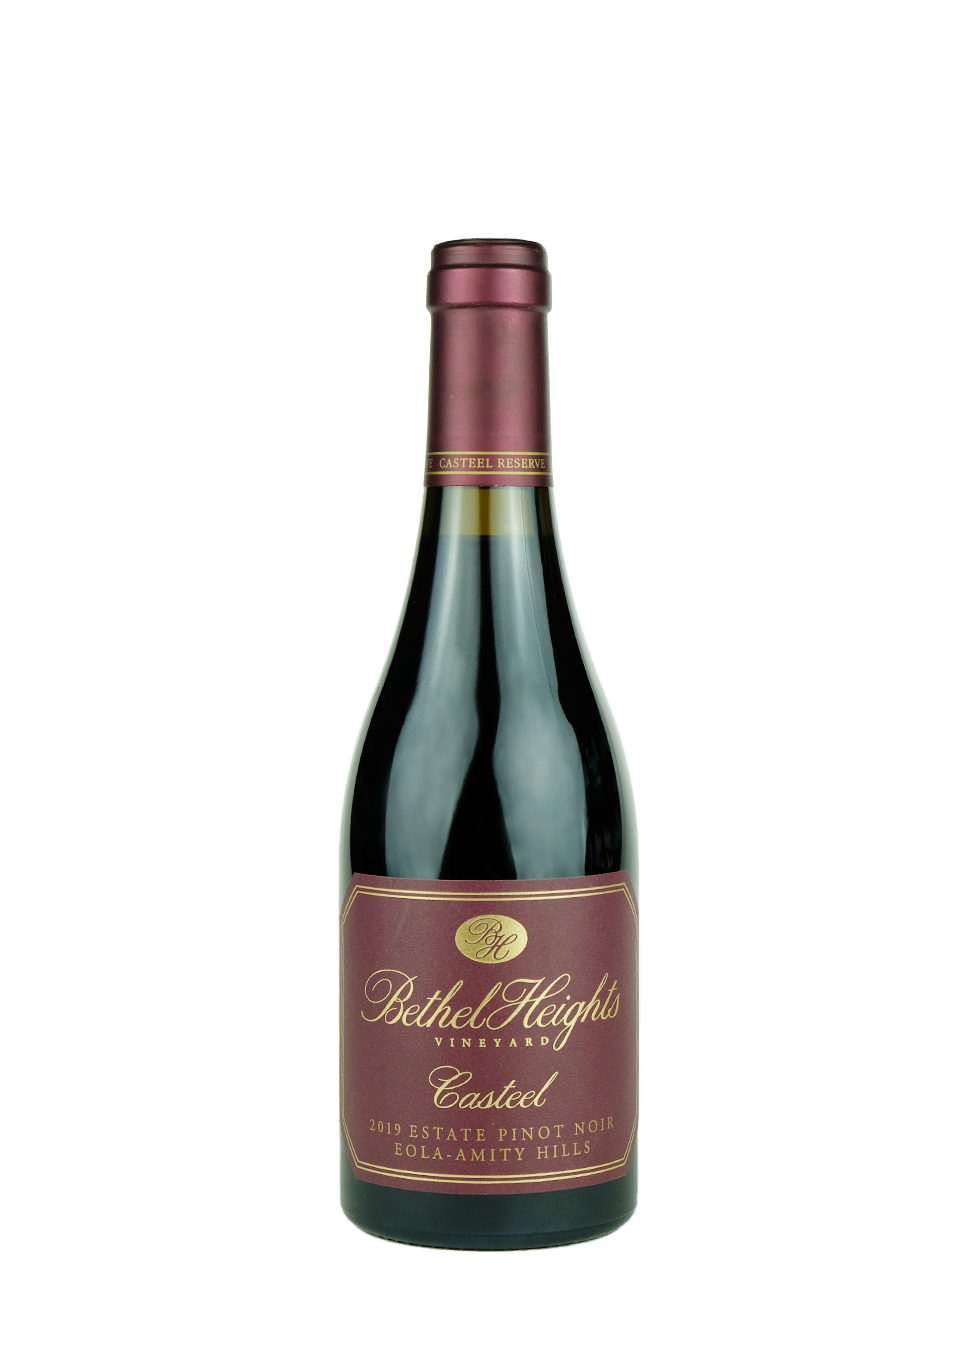 Bethel Heights 2019 Pinot Noir 'Casteel' 375ml